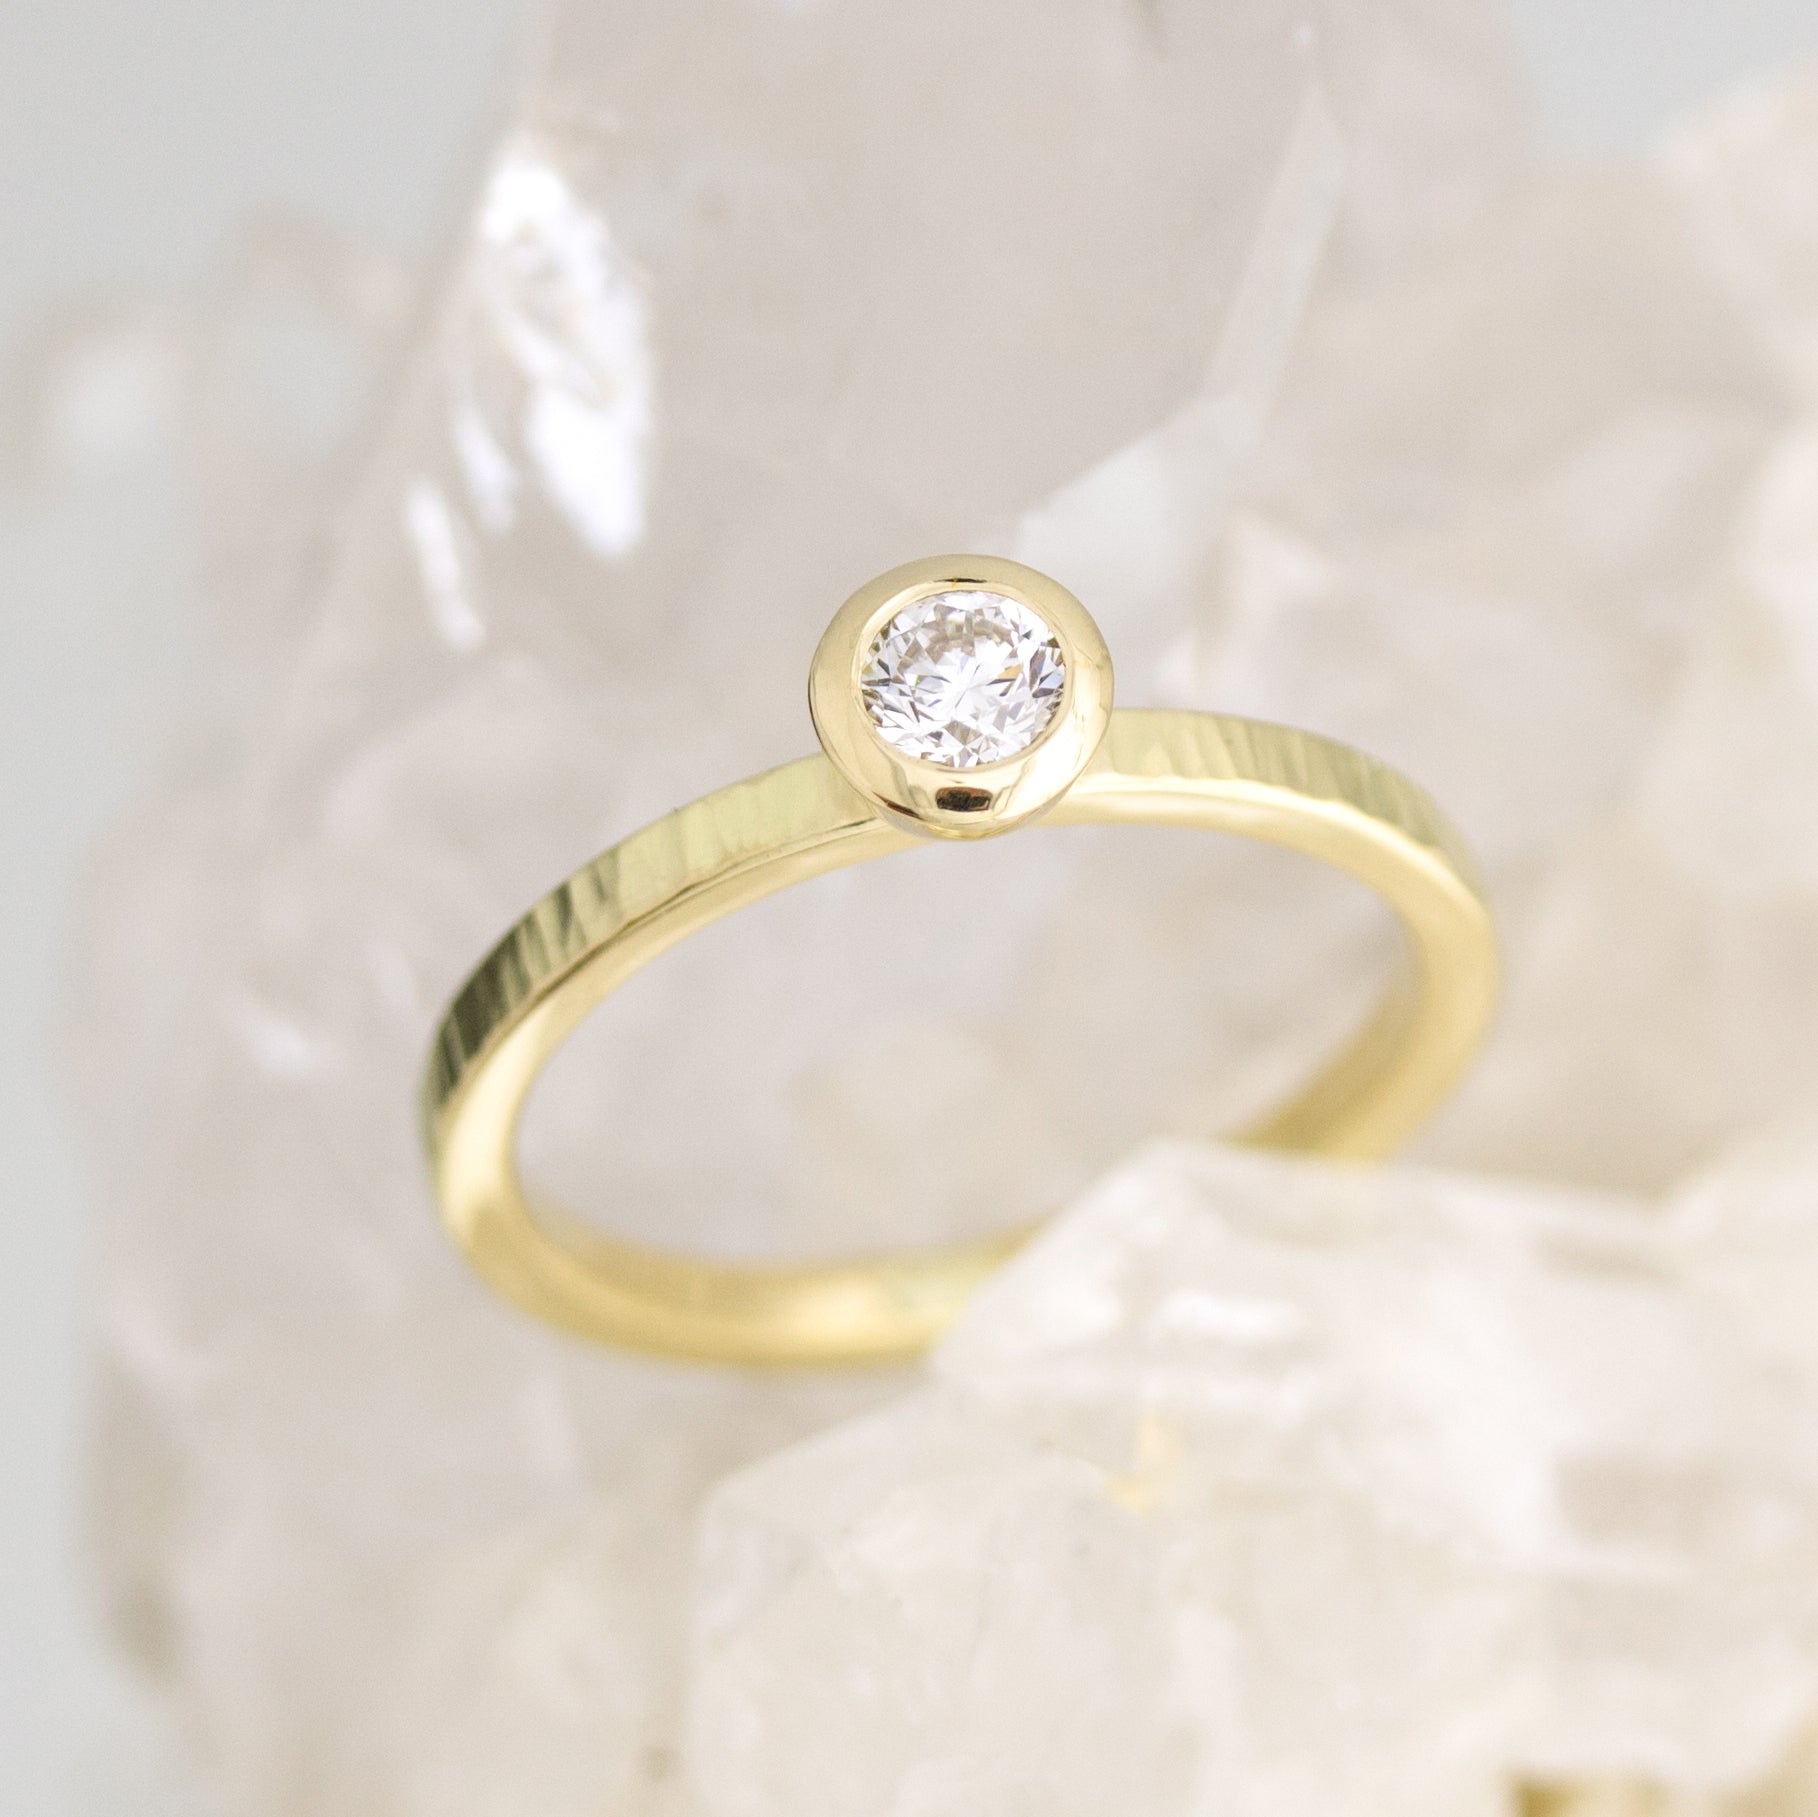 Ring Gelbgold 750/000 mit Diamant 0,25ct, geschmiedet